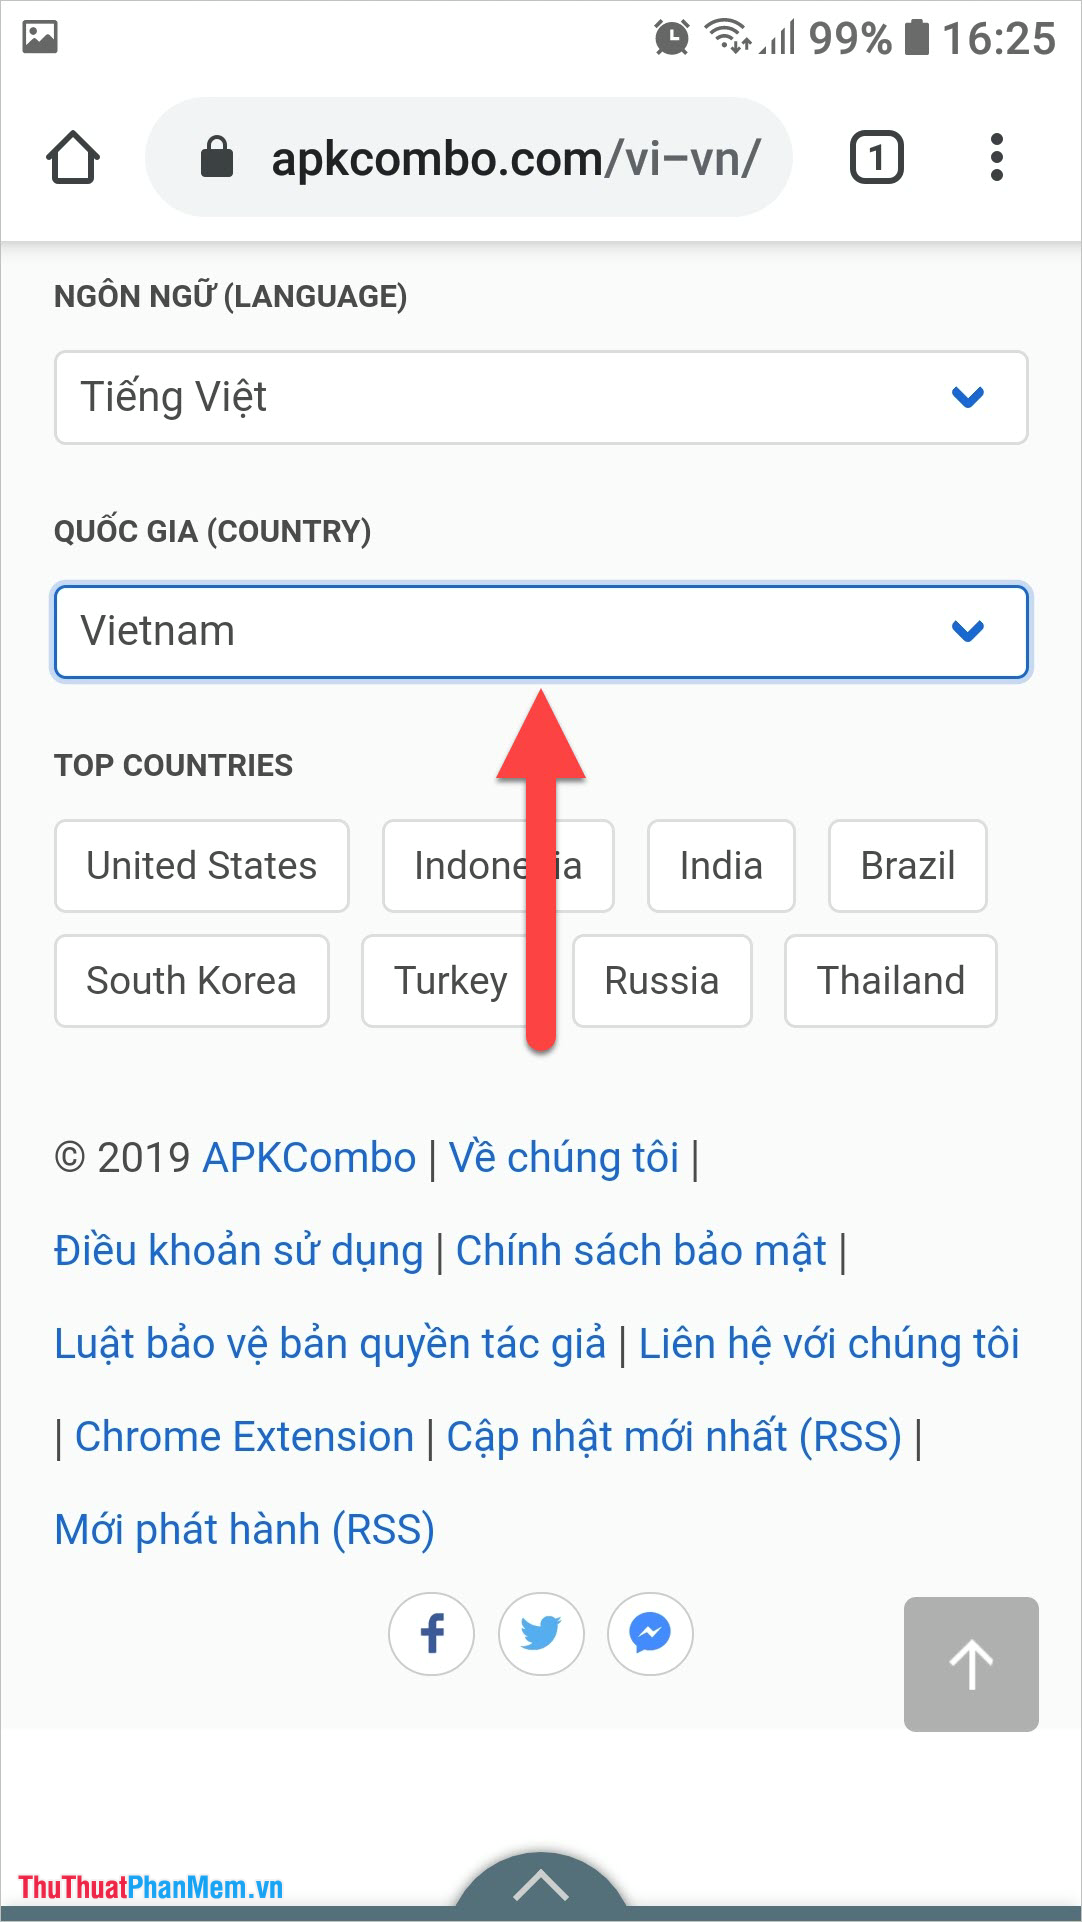 Chọn Ngôn ngữ Tiếng Việt và Quốc gia Việt Nam